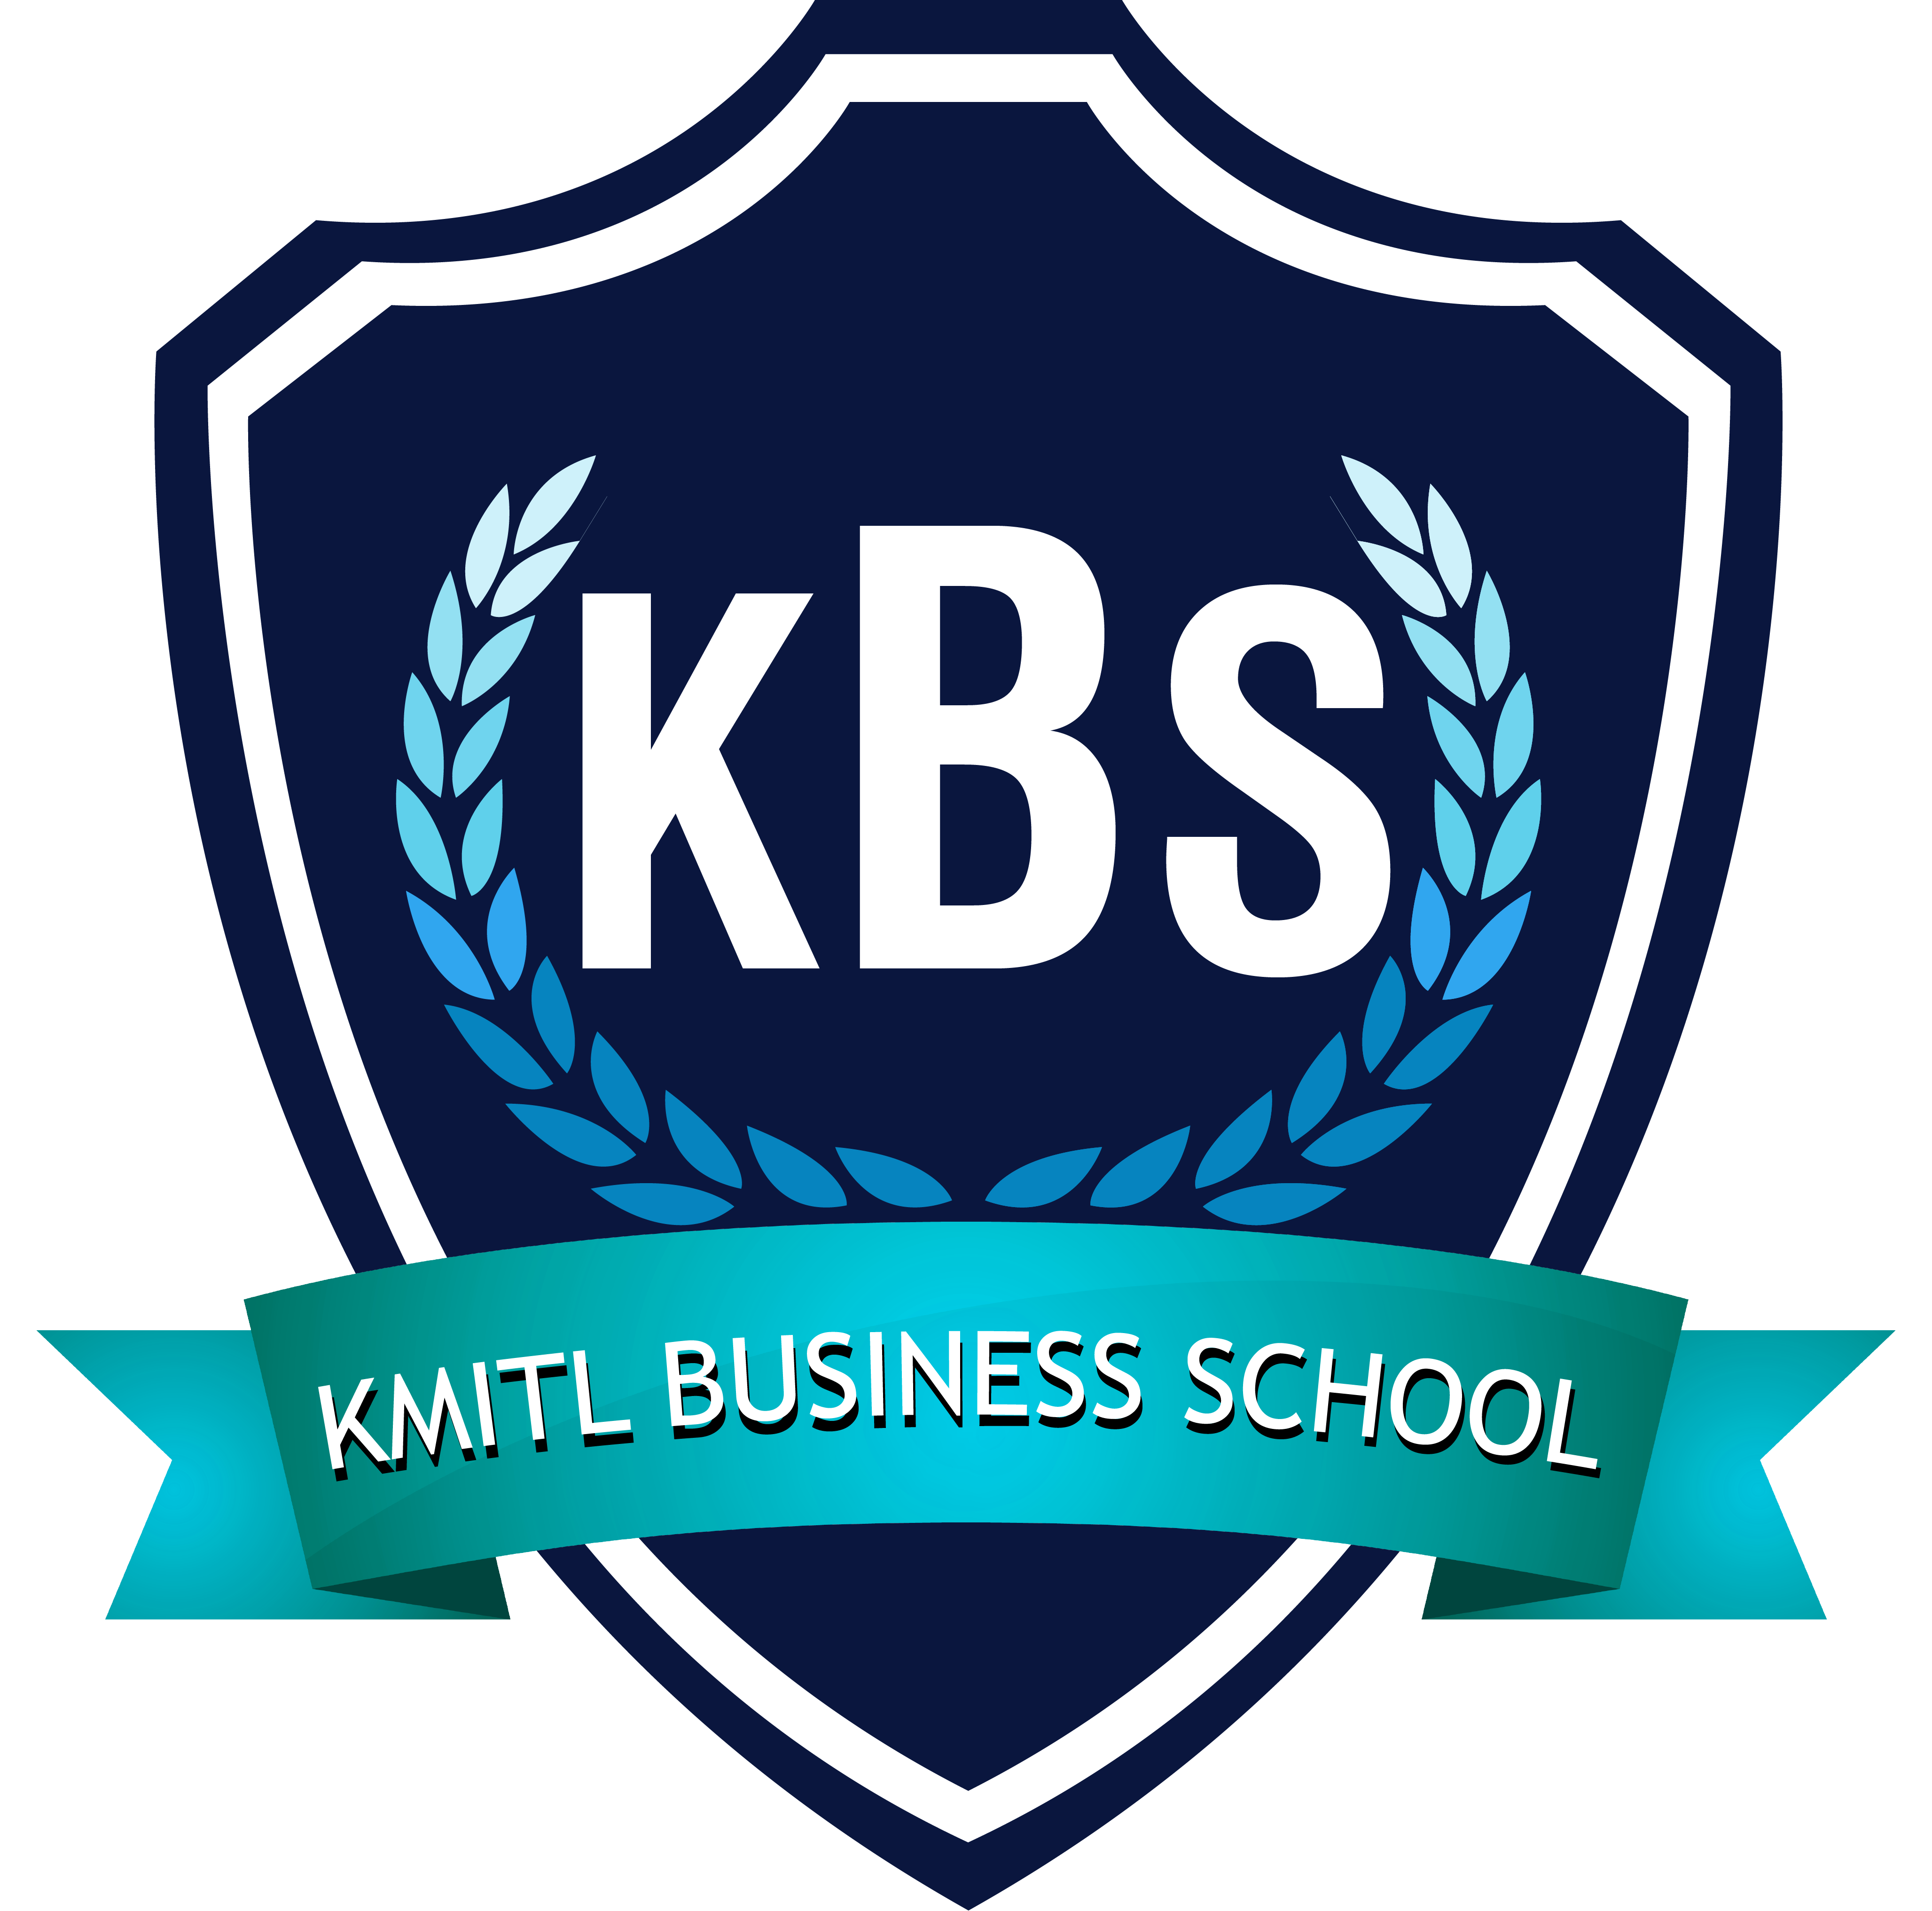 KMITL Business School